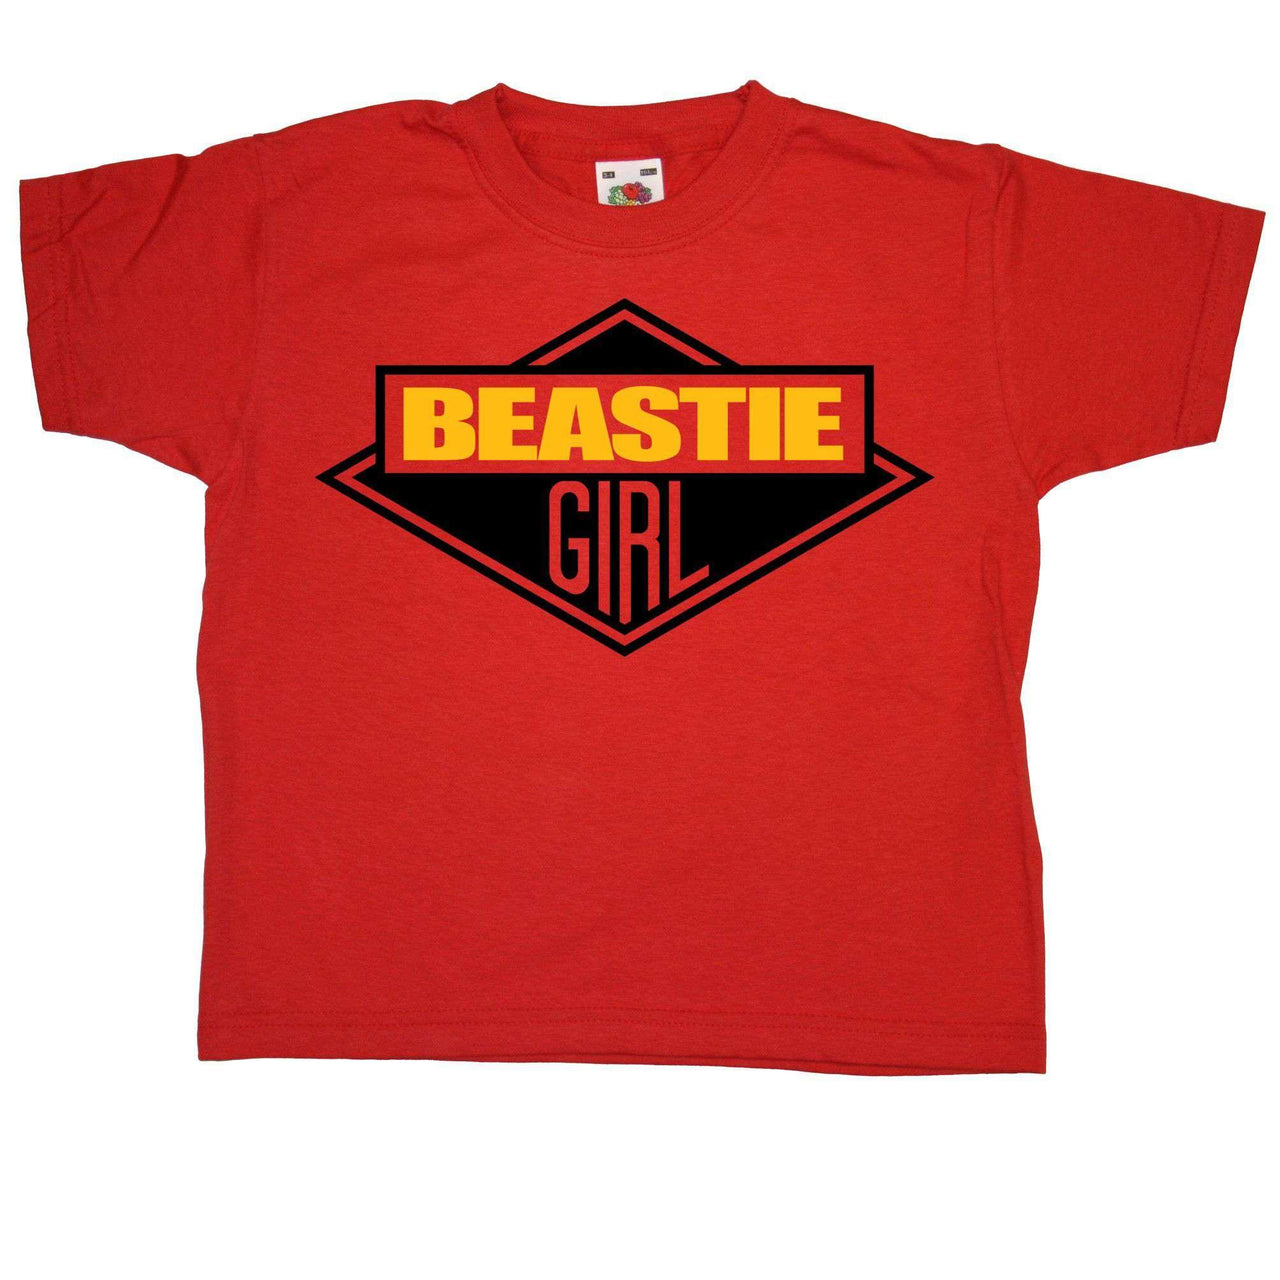 Beastie Girl Kids T-Shirt - 8Ball Kids T-Shirt